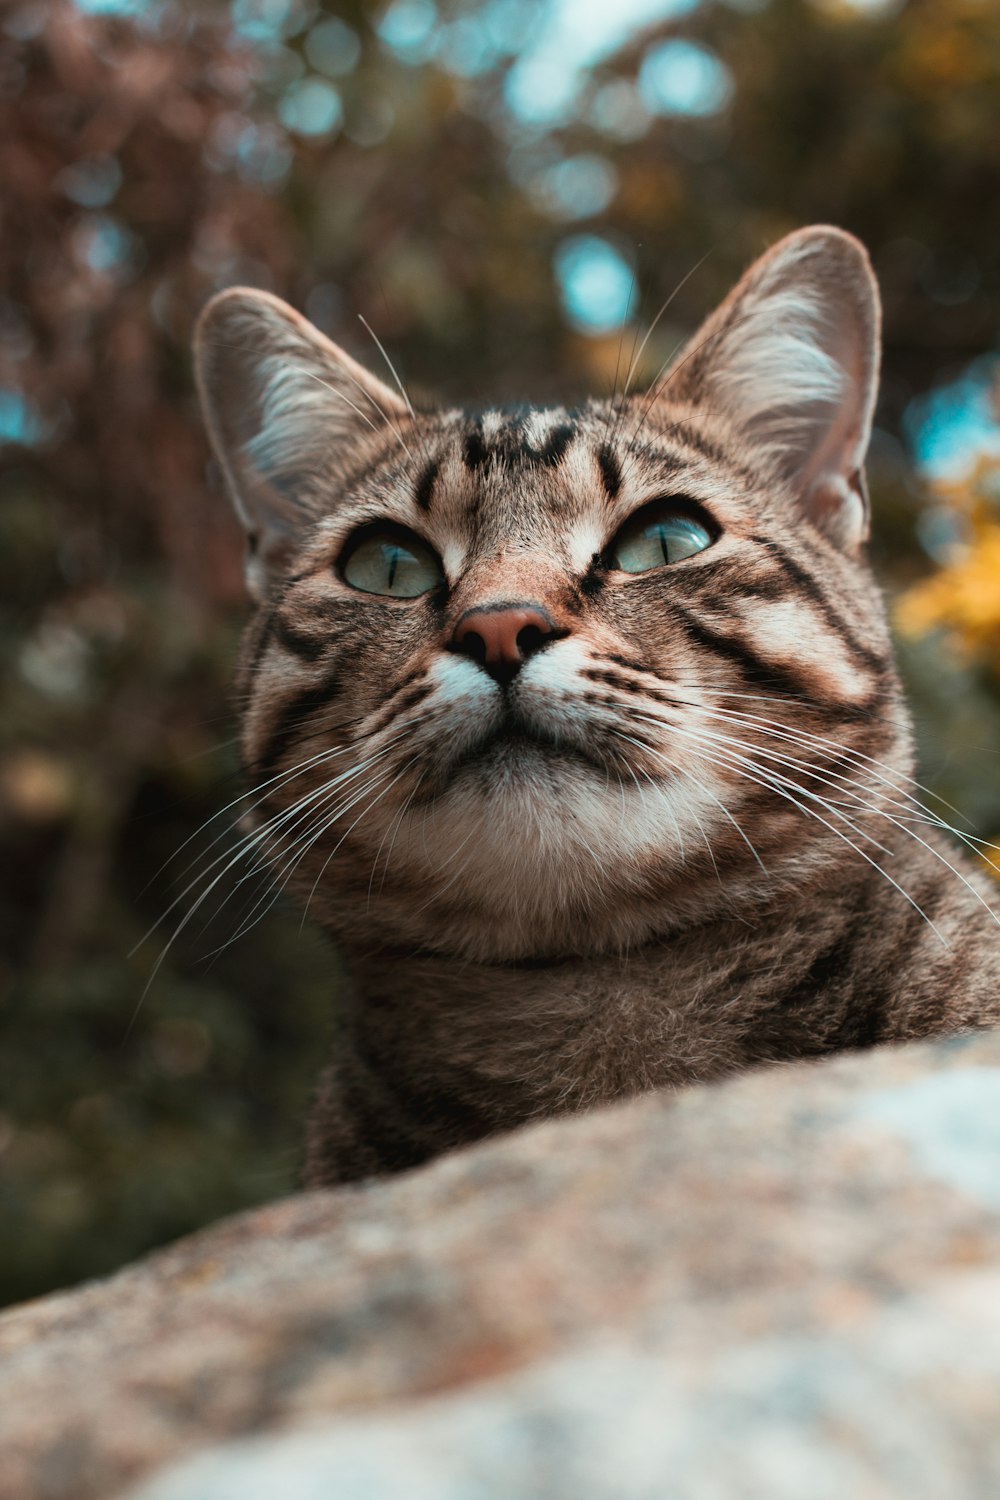 brown tabby cat on brown rock